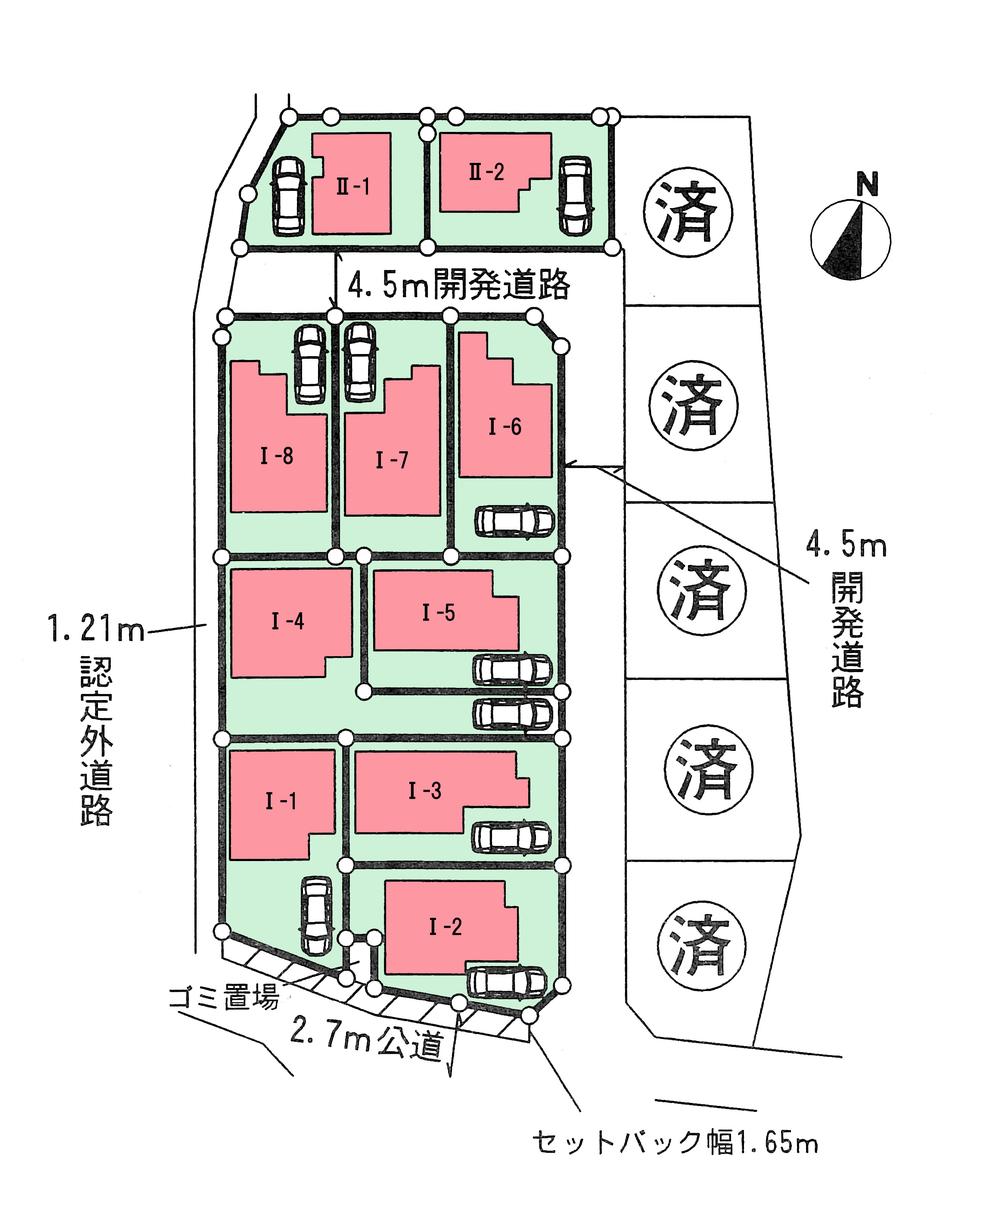 Compartment figure. 31,800,000 yen, 4LDK, Land area 128.9 sq m , Building area 97.7 sq m